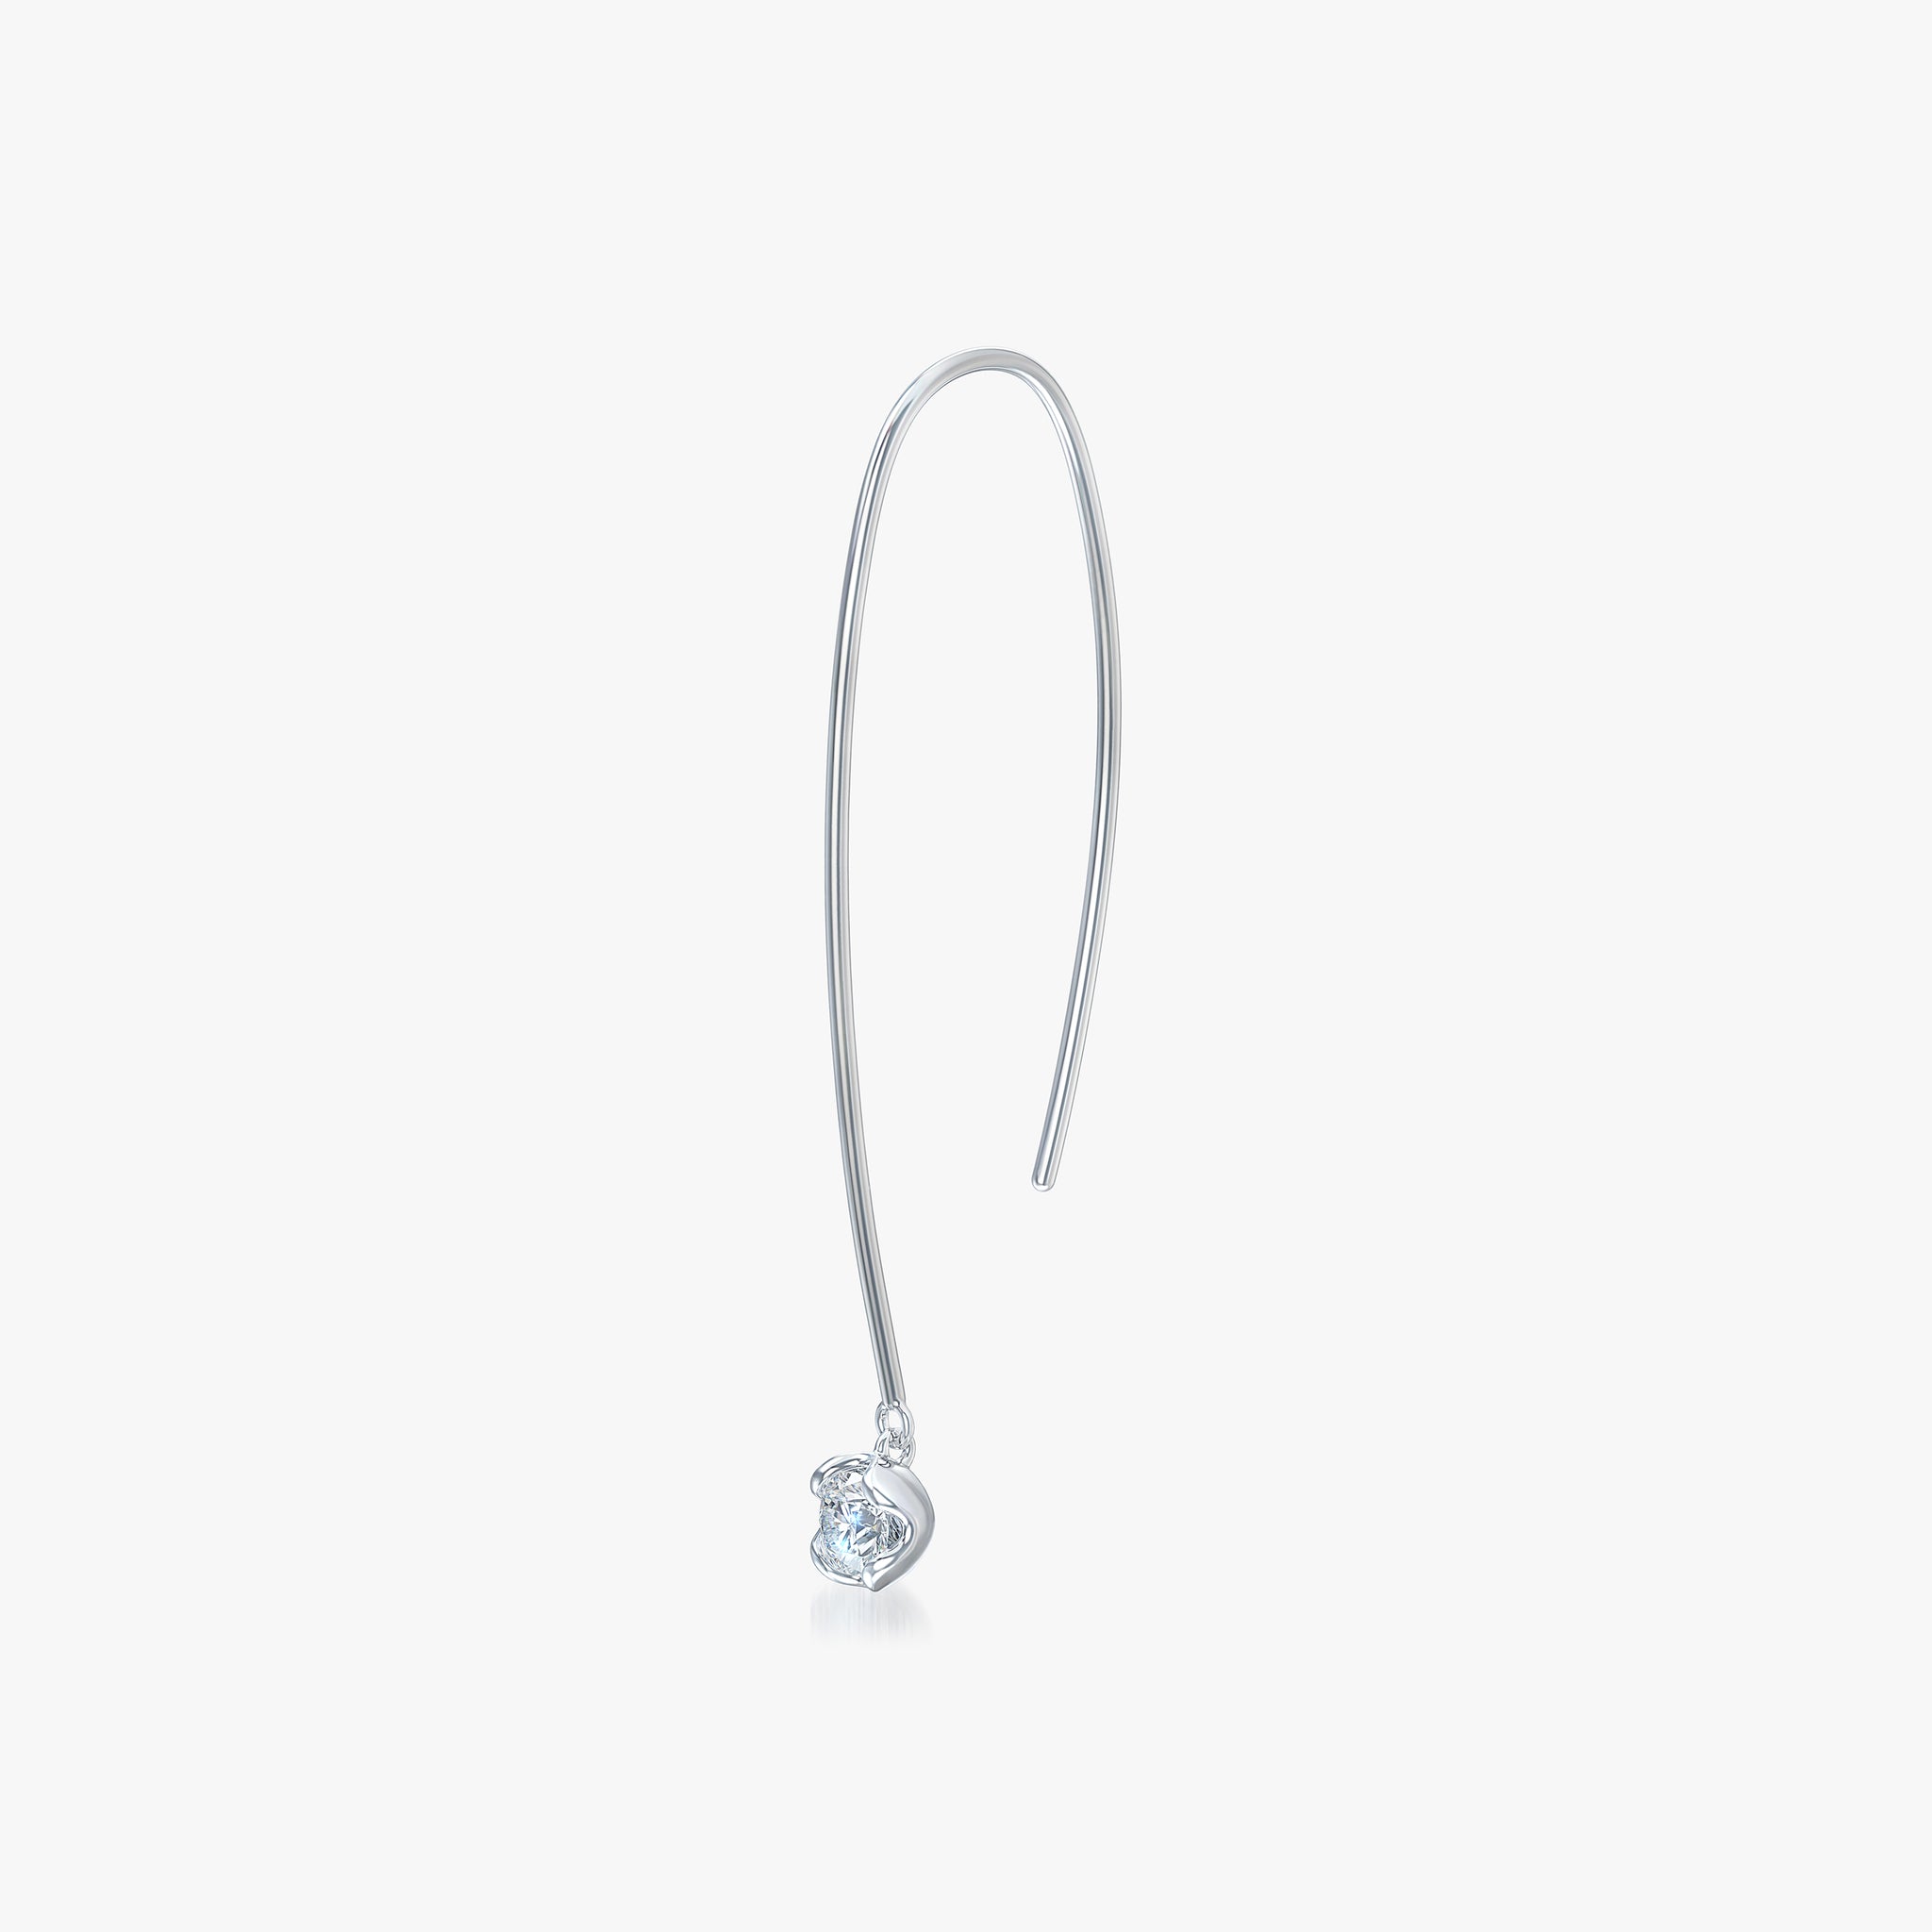 14kt White Gold Dangle Diamond Earrings - J'EVAR 0.50 ct